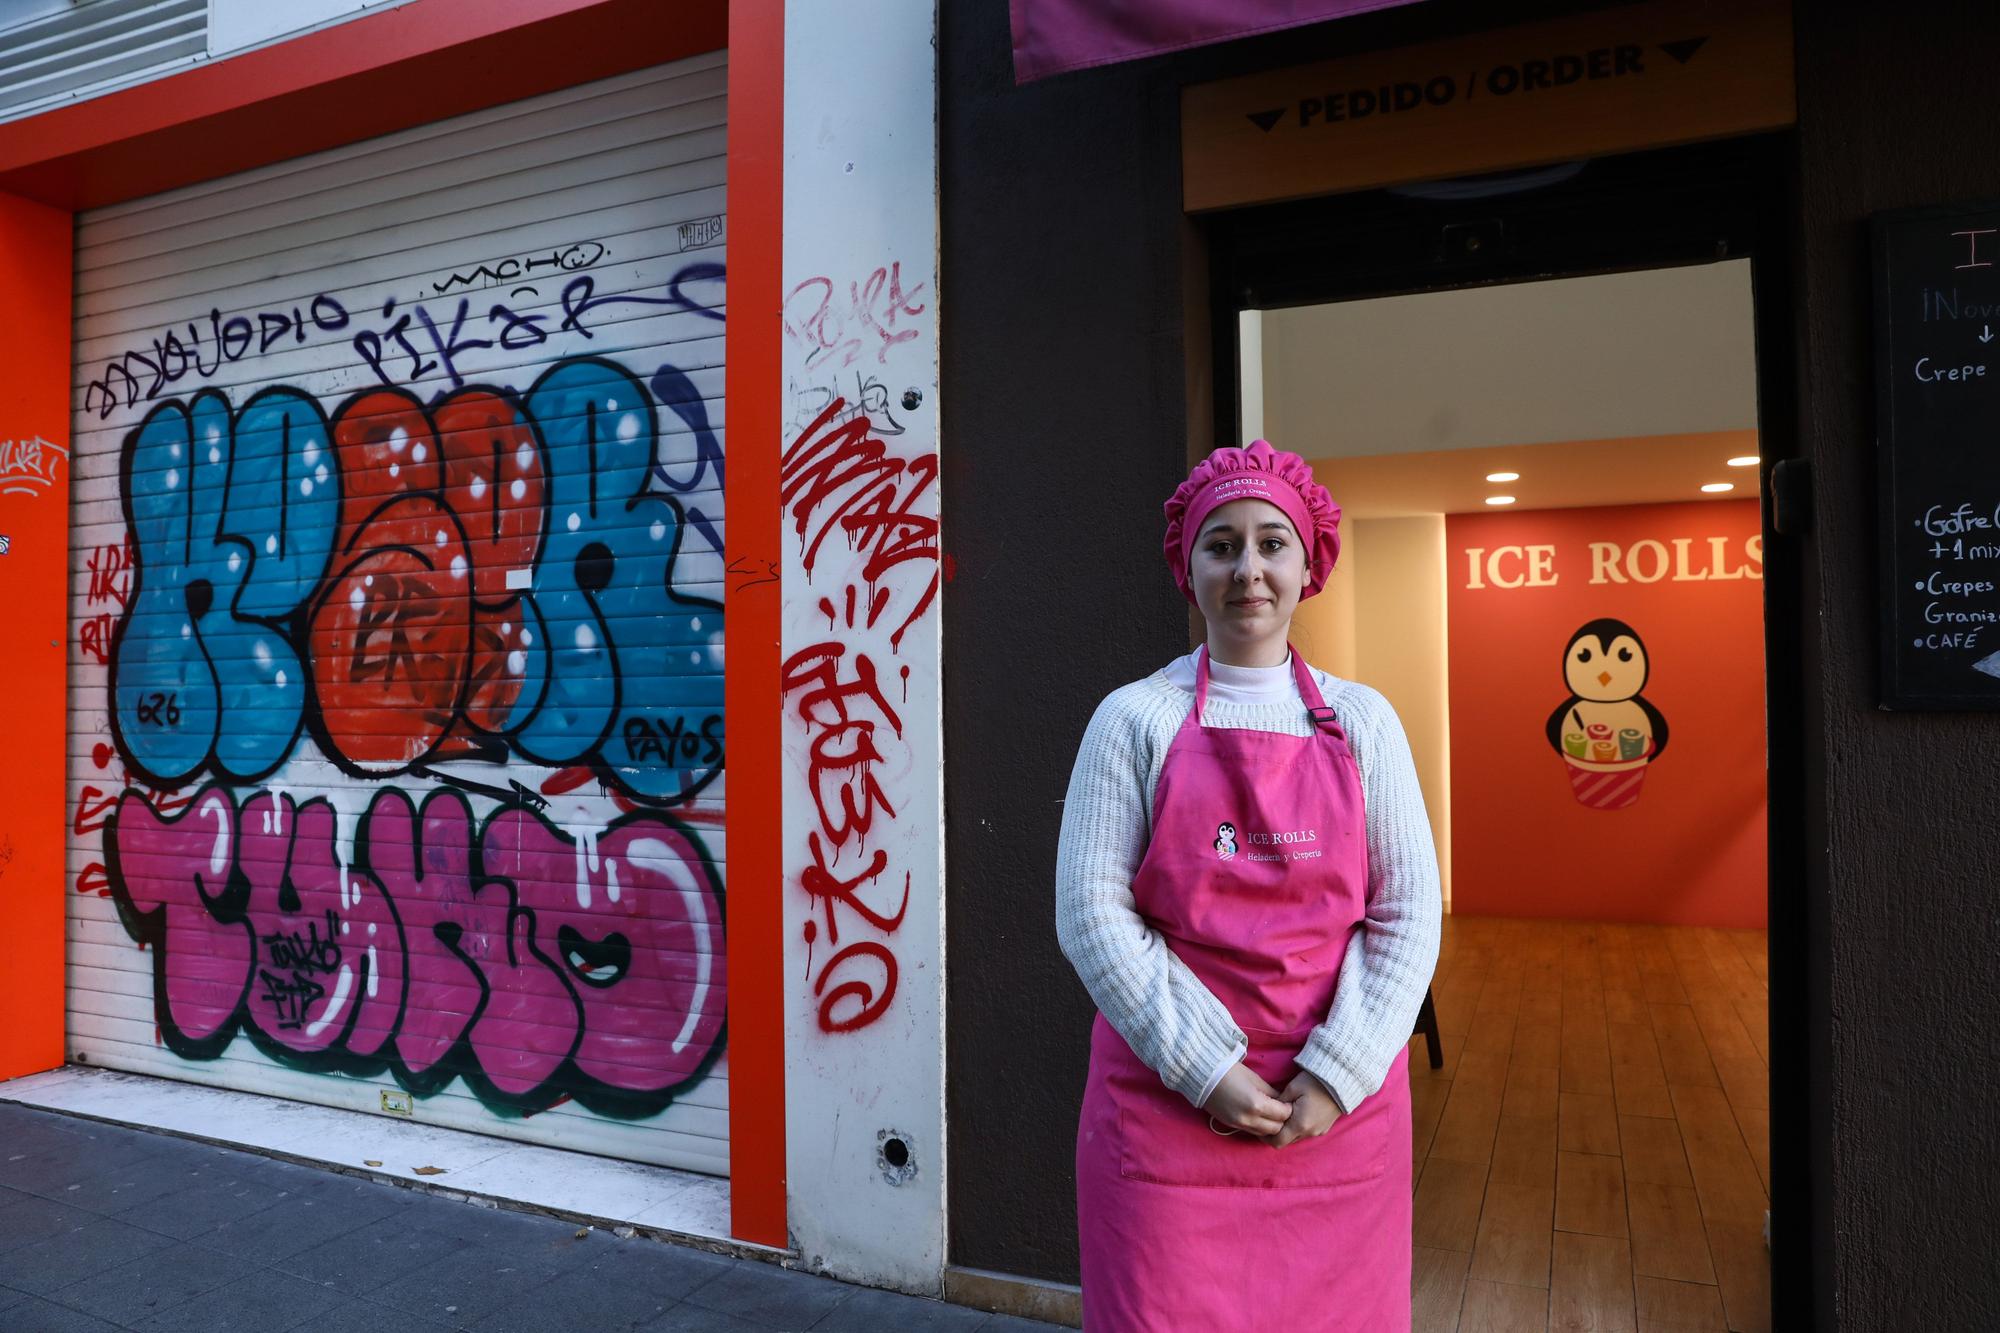 En imágenes: Los grafitis invaden la calle Corrida